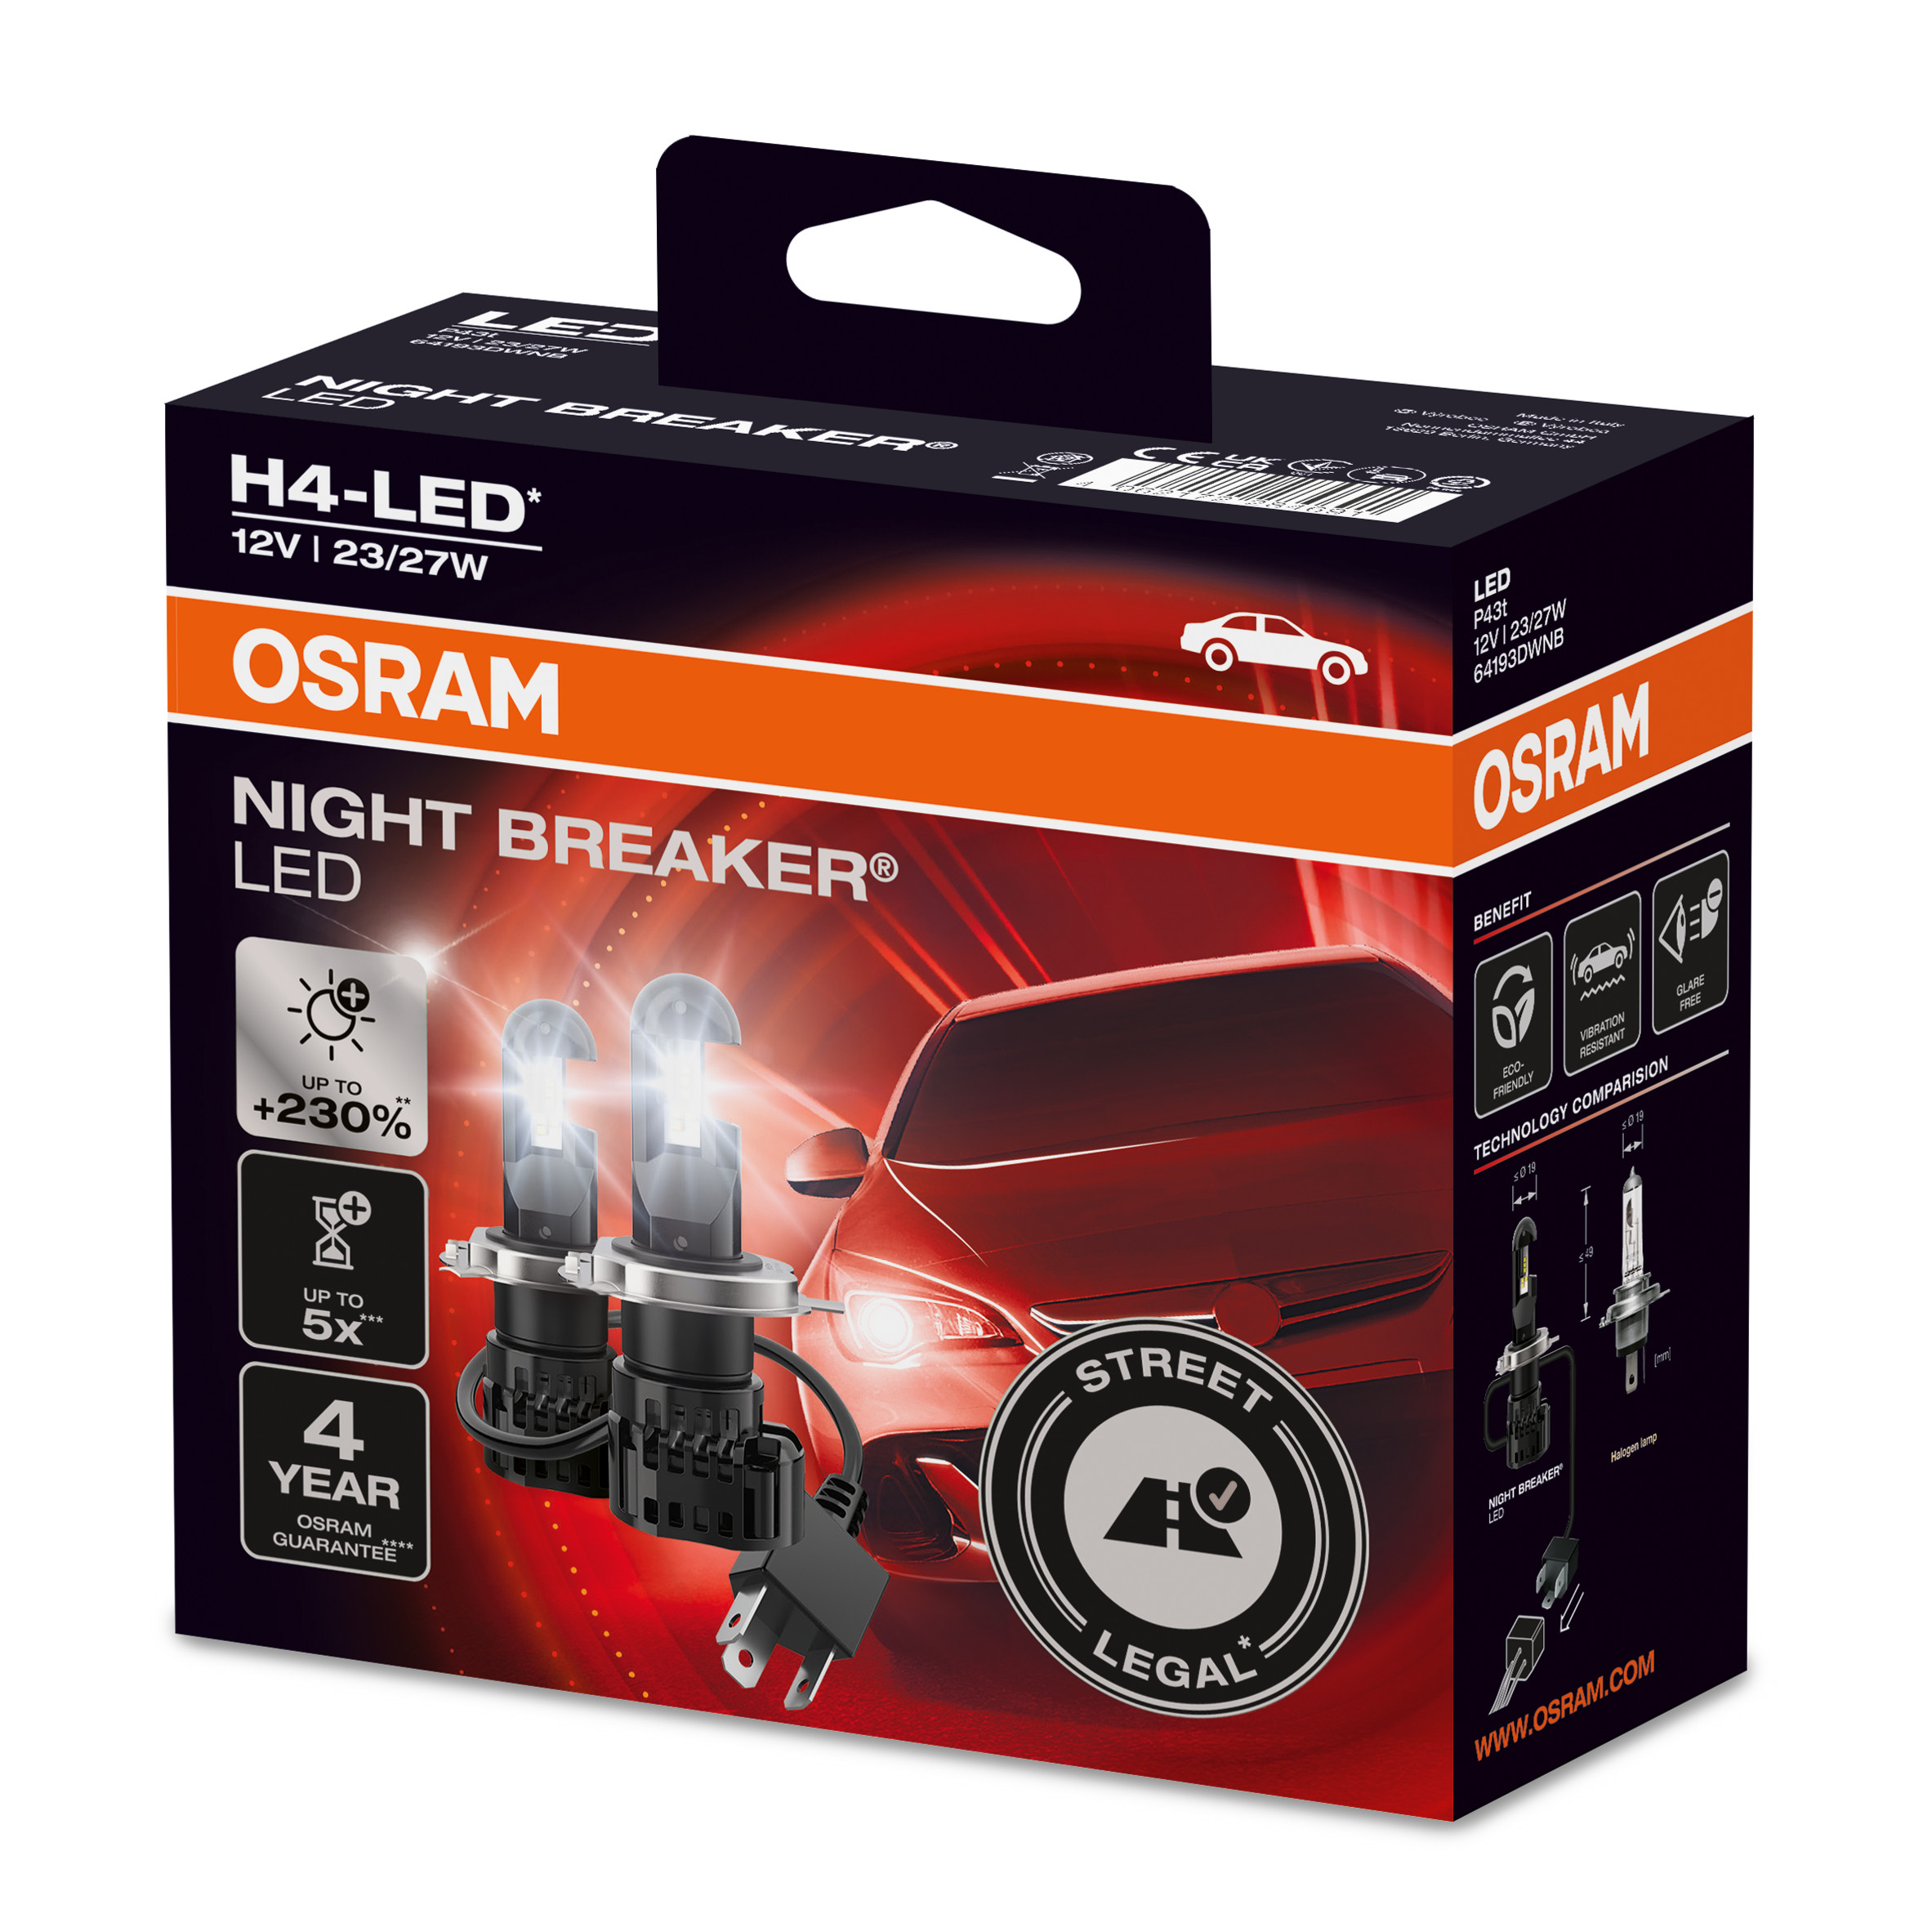 OSRAM_Night breaker LED H4